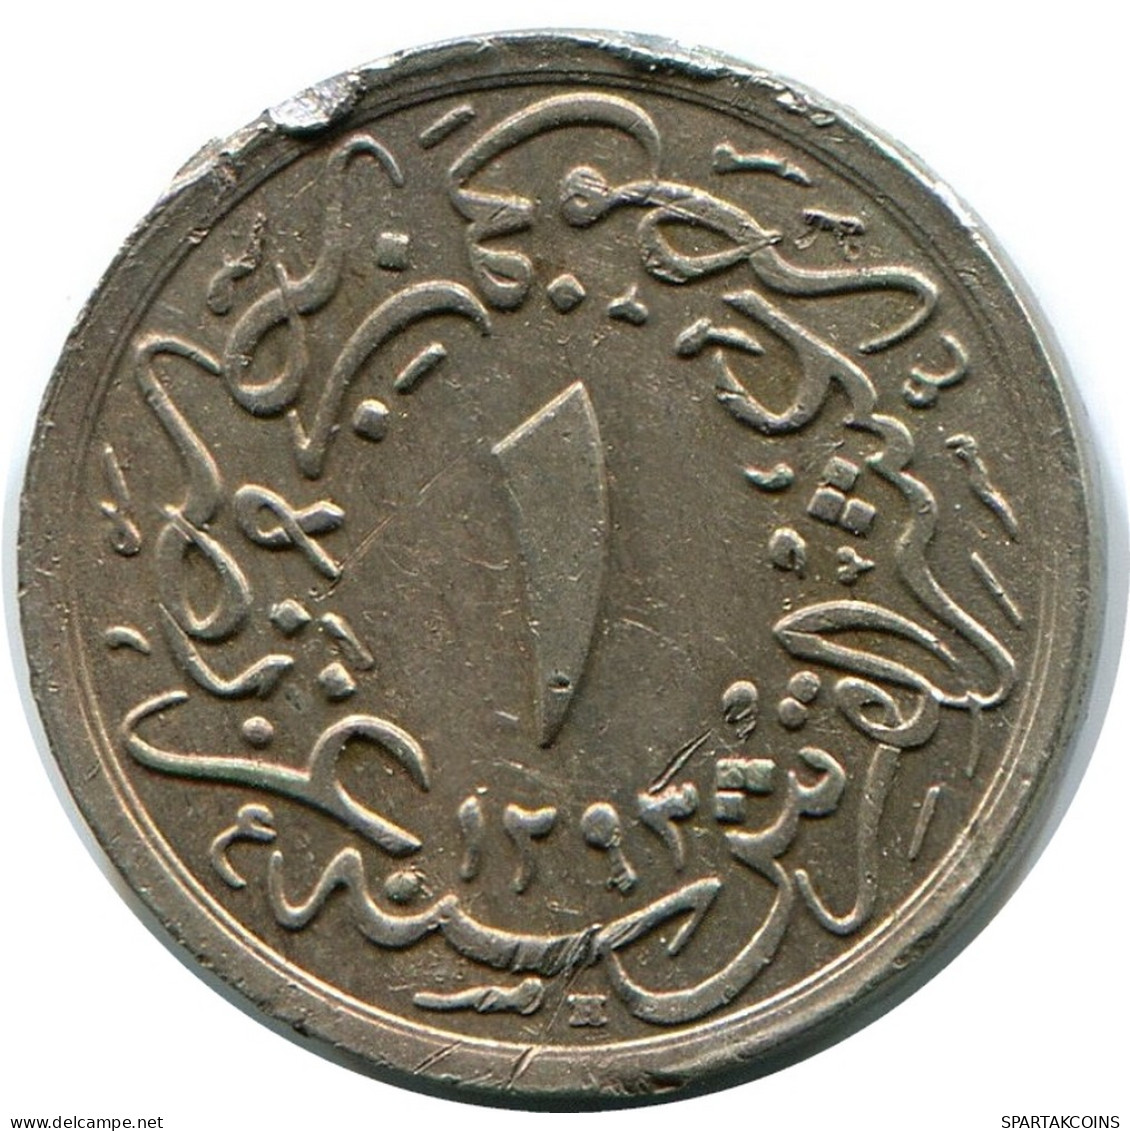 1/10 QIRSH 1907 ÄGYPTEN EGYPT Islamisch Münze #AH267.10.D - Egypt